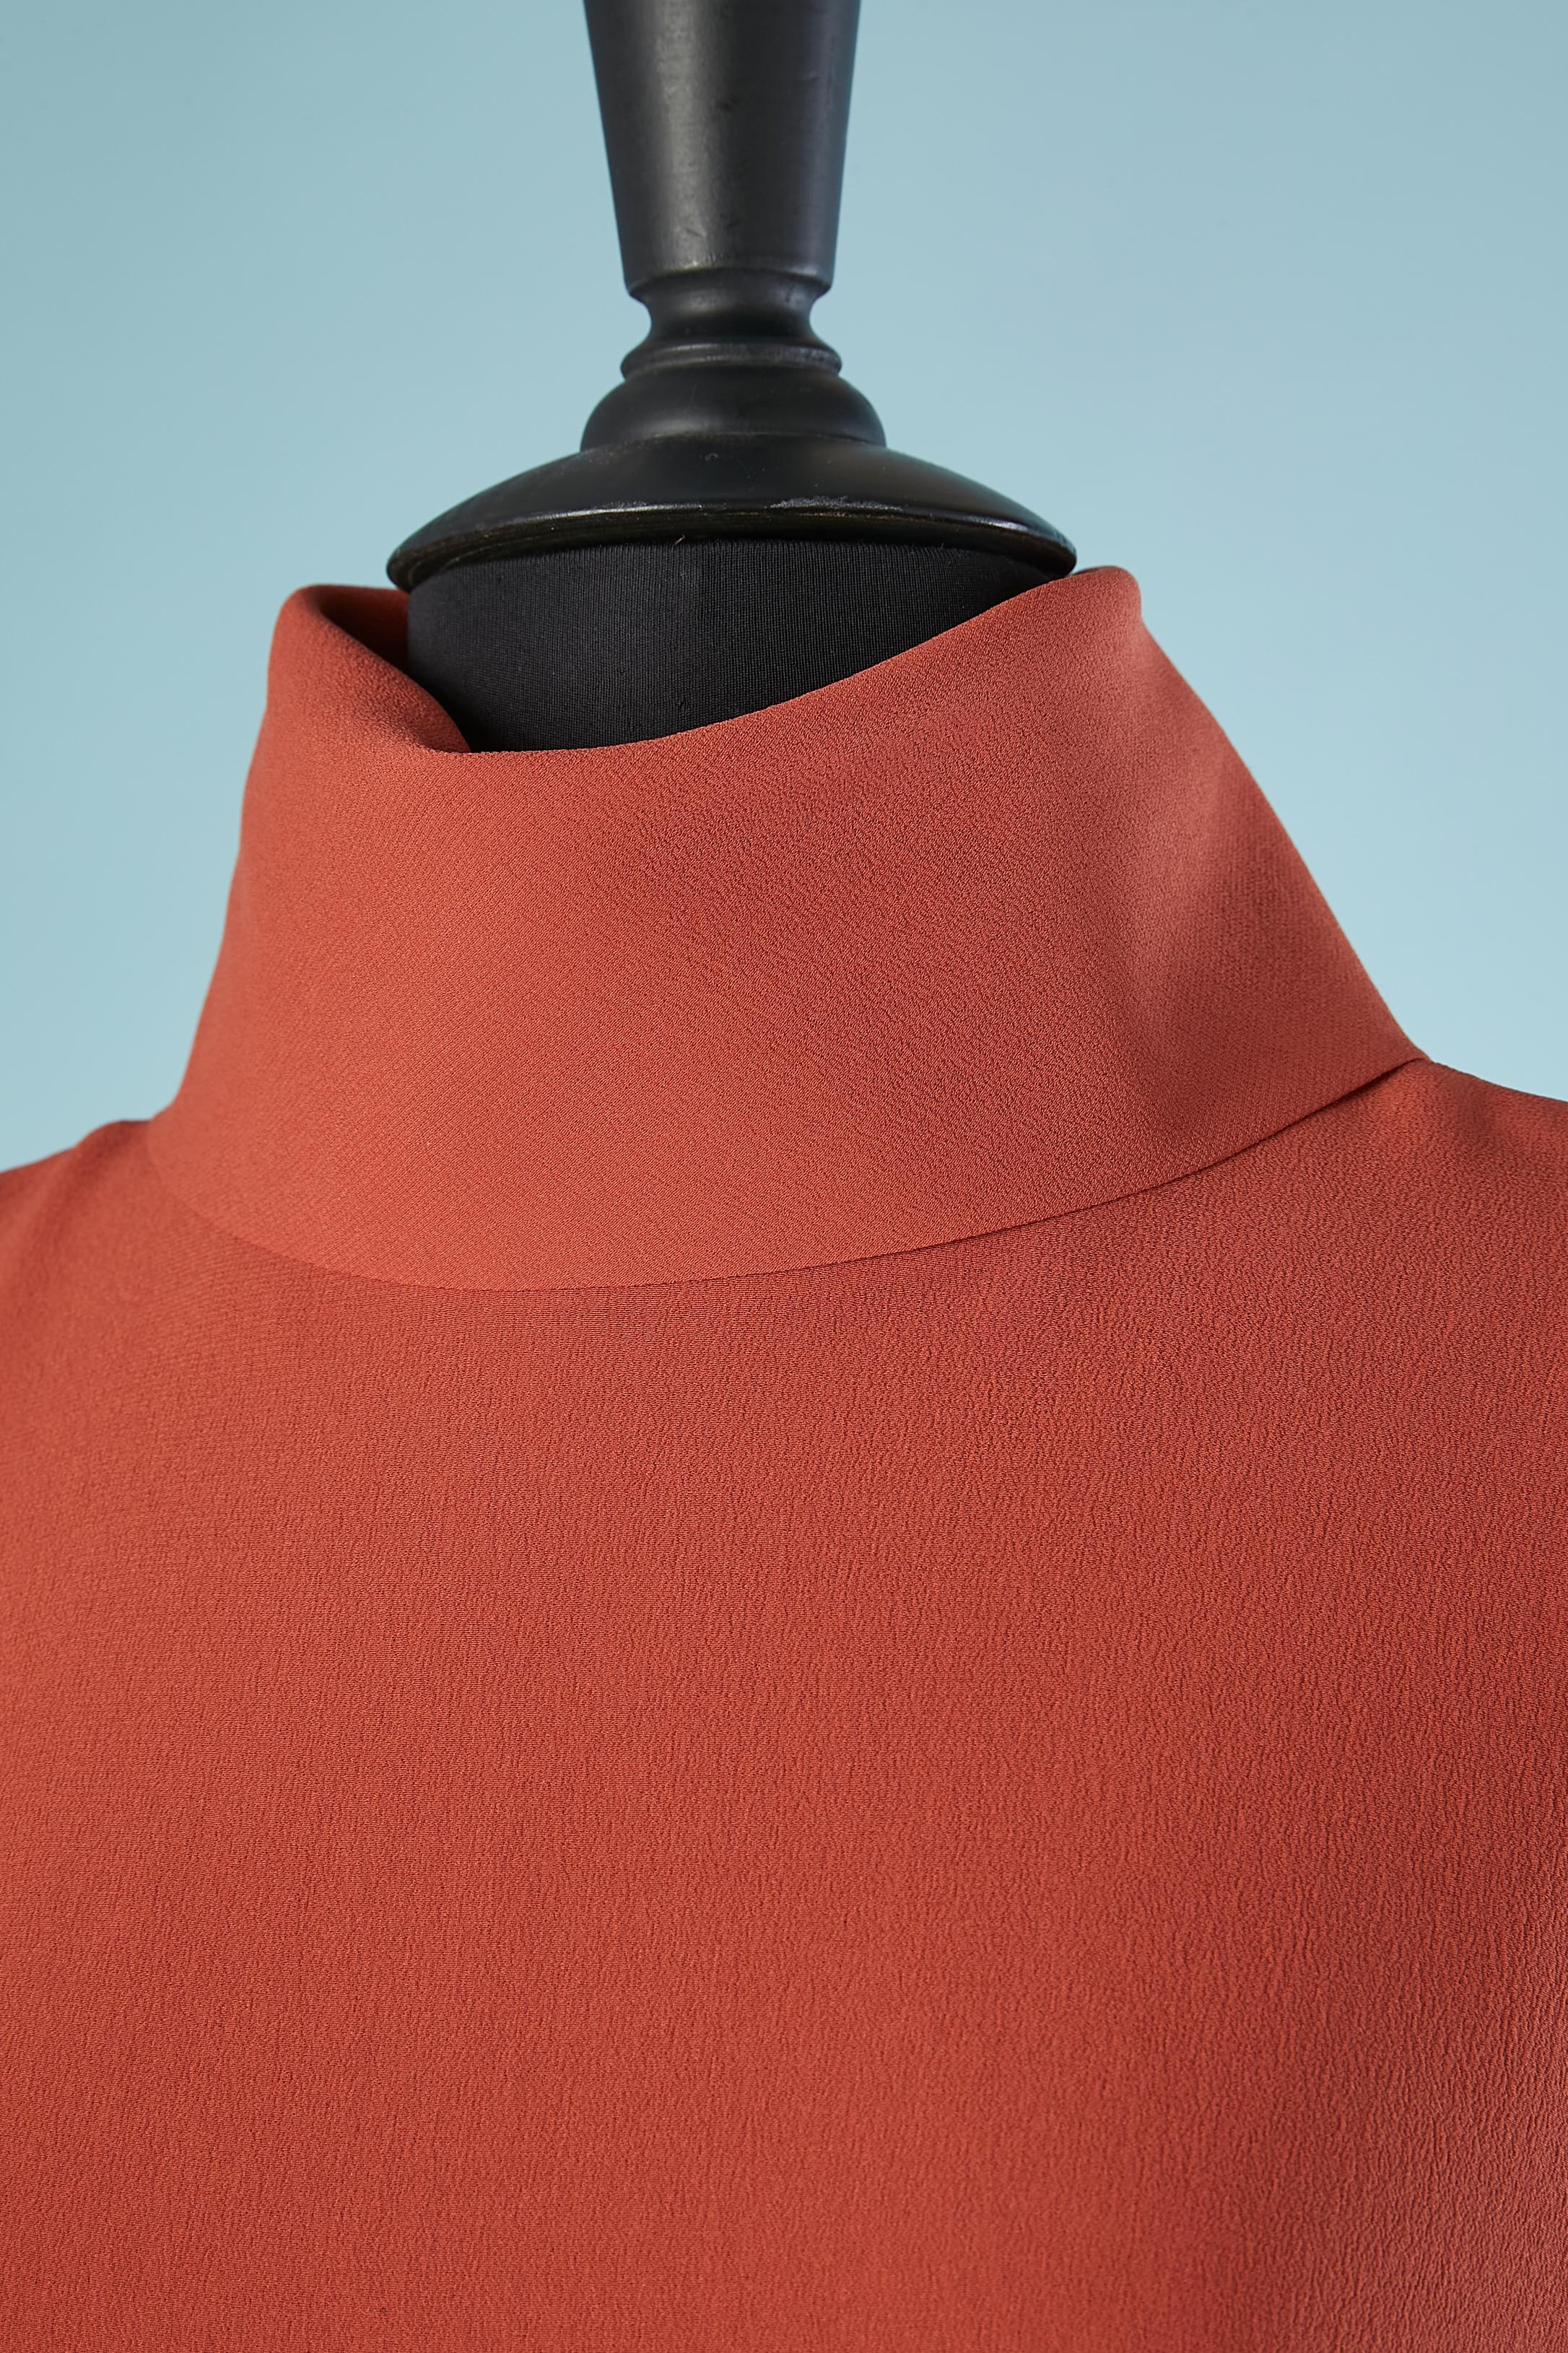 Seidenchiffon-Terrakota-Kleid mit Knopf und Knopfloch im Nacken. Doppelte Lagen Chiffon am Körper und eine Lage Chiffon an den Ärmeln (leicht durchsichtig) 
Authentizität durch Hologramm. 100 % Seide. 
GRÖSSE 44 (It) 40 (Fr) 10 (Us)
